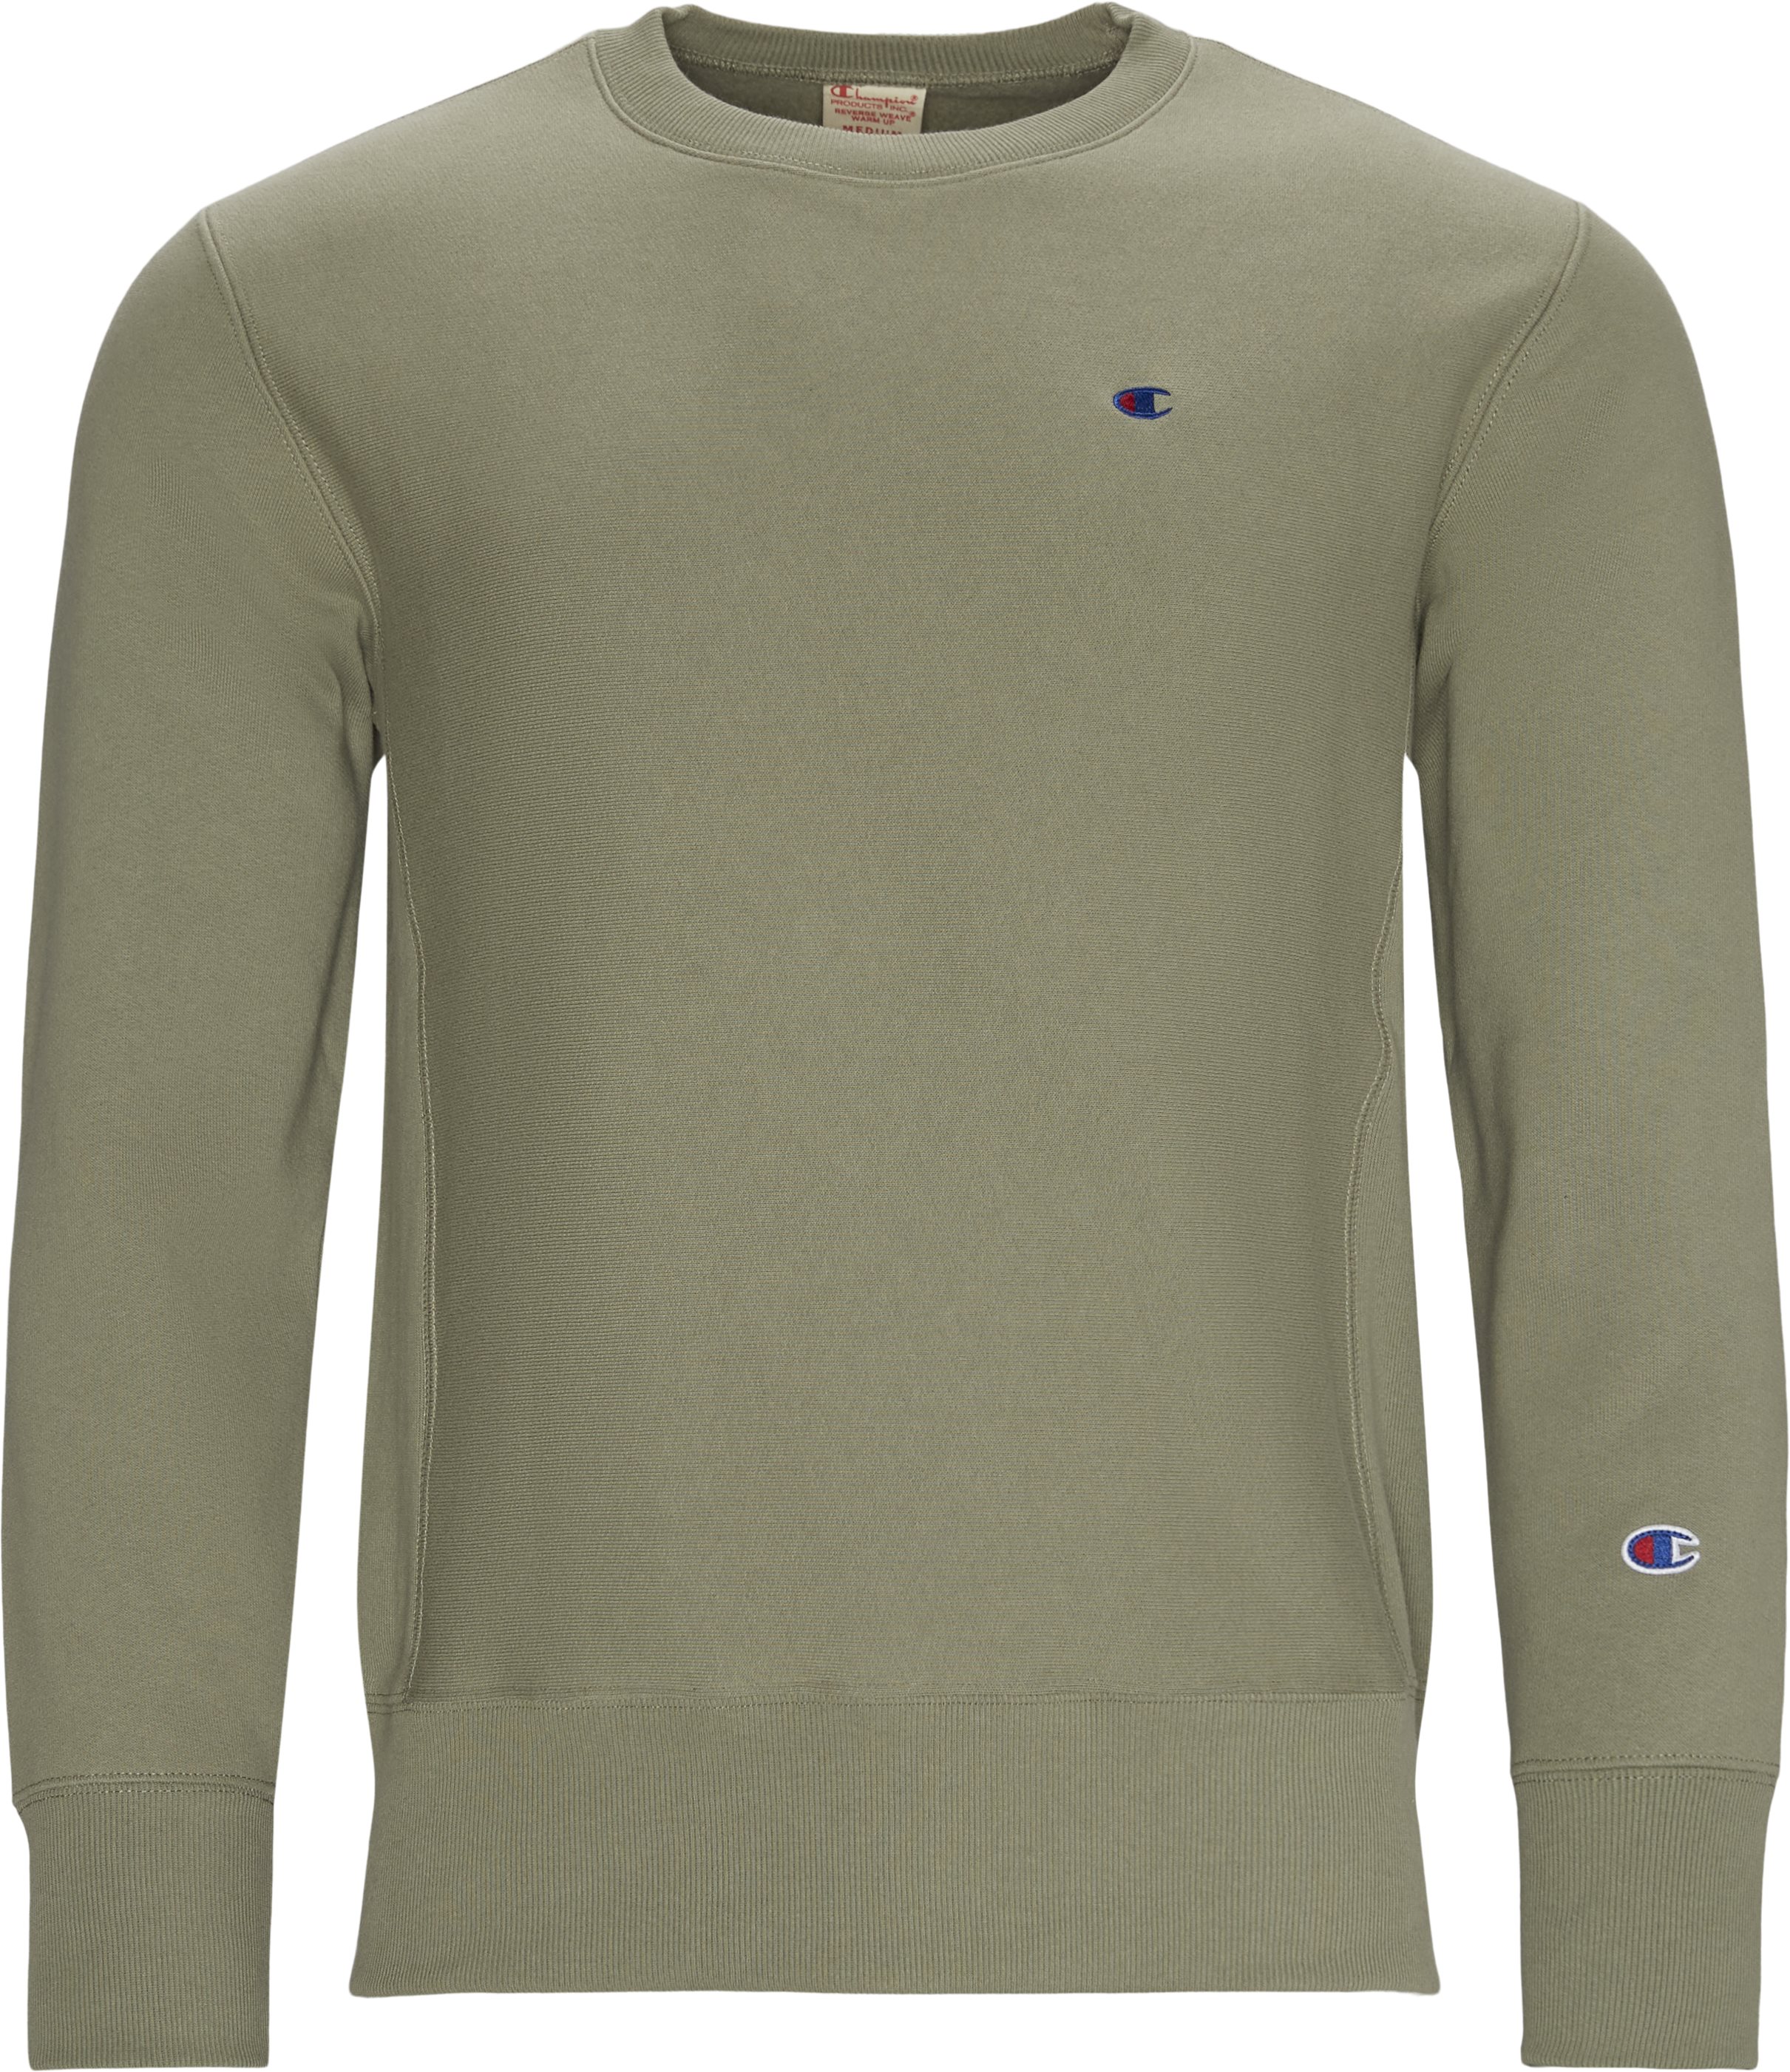 Crewneck -tröja - Sweatshirts - Regular fit - Grön